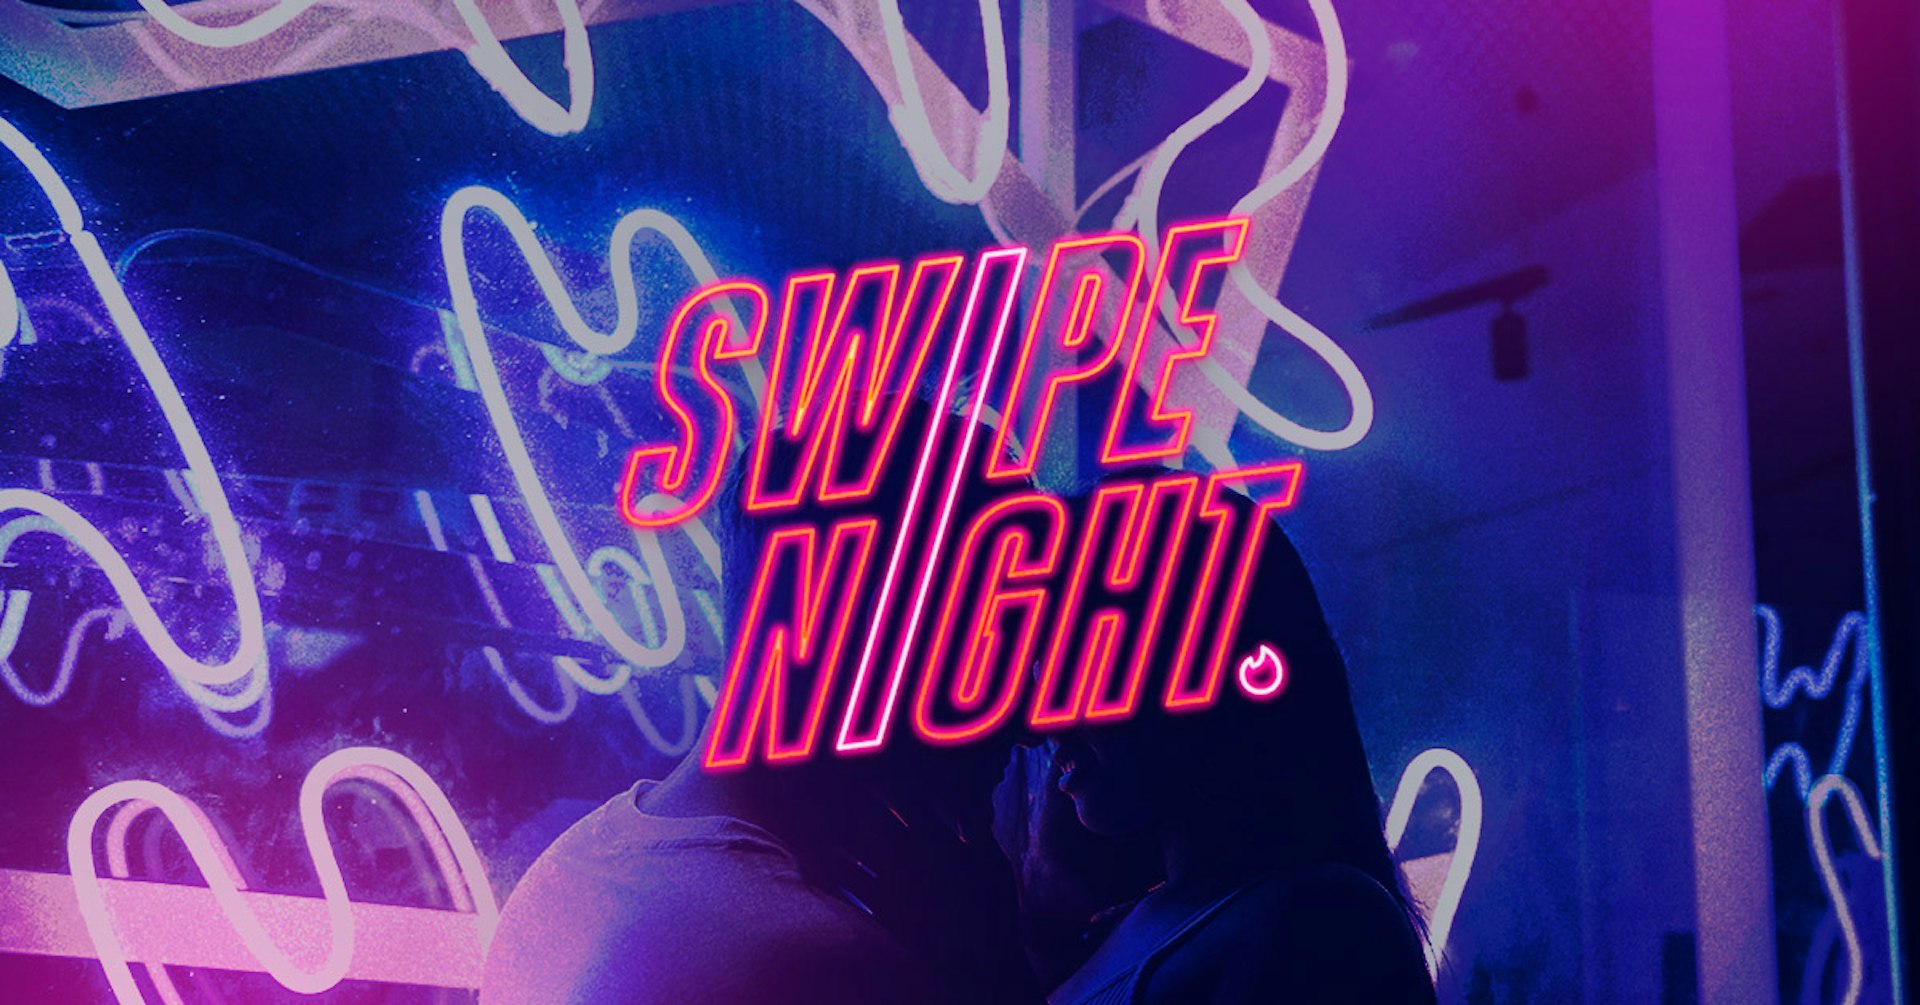 Tinder estrenó su serie Swipe Night, ¿La conoces? Aquí te lo contamos